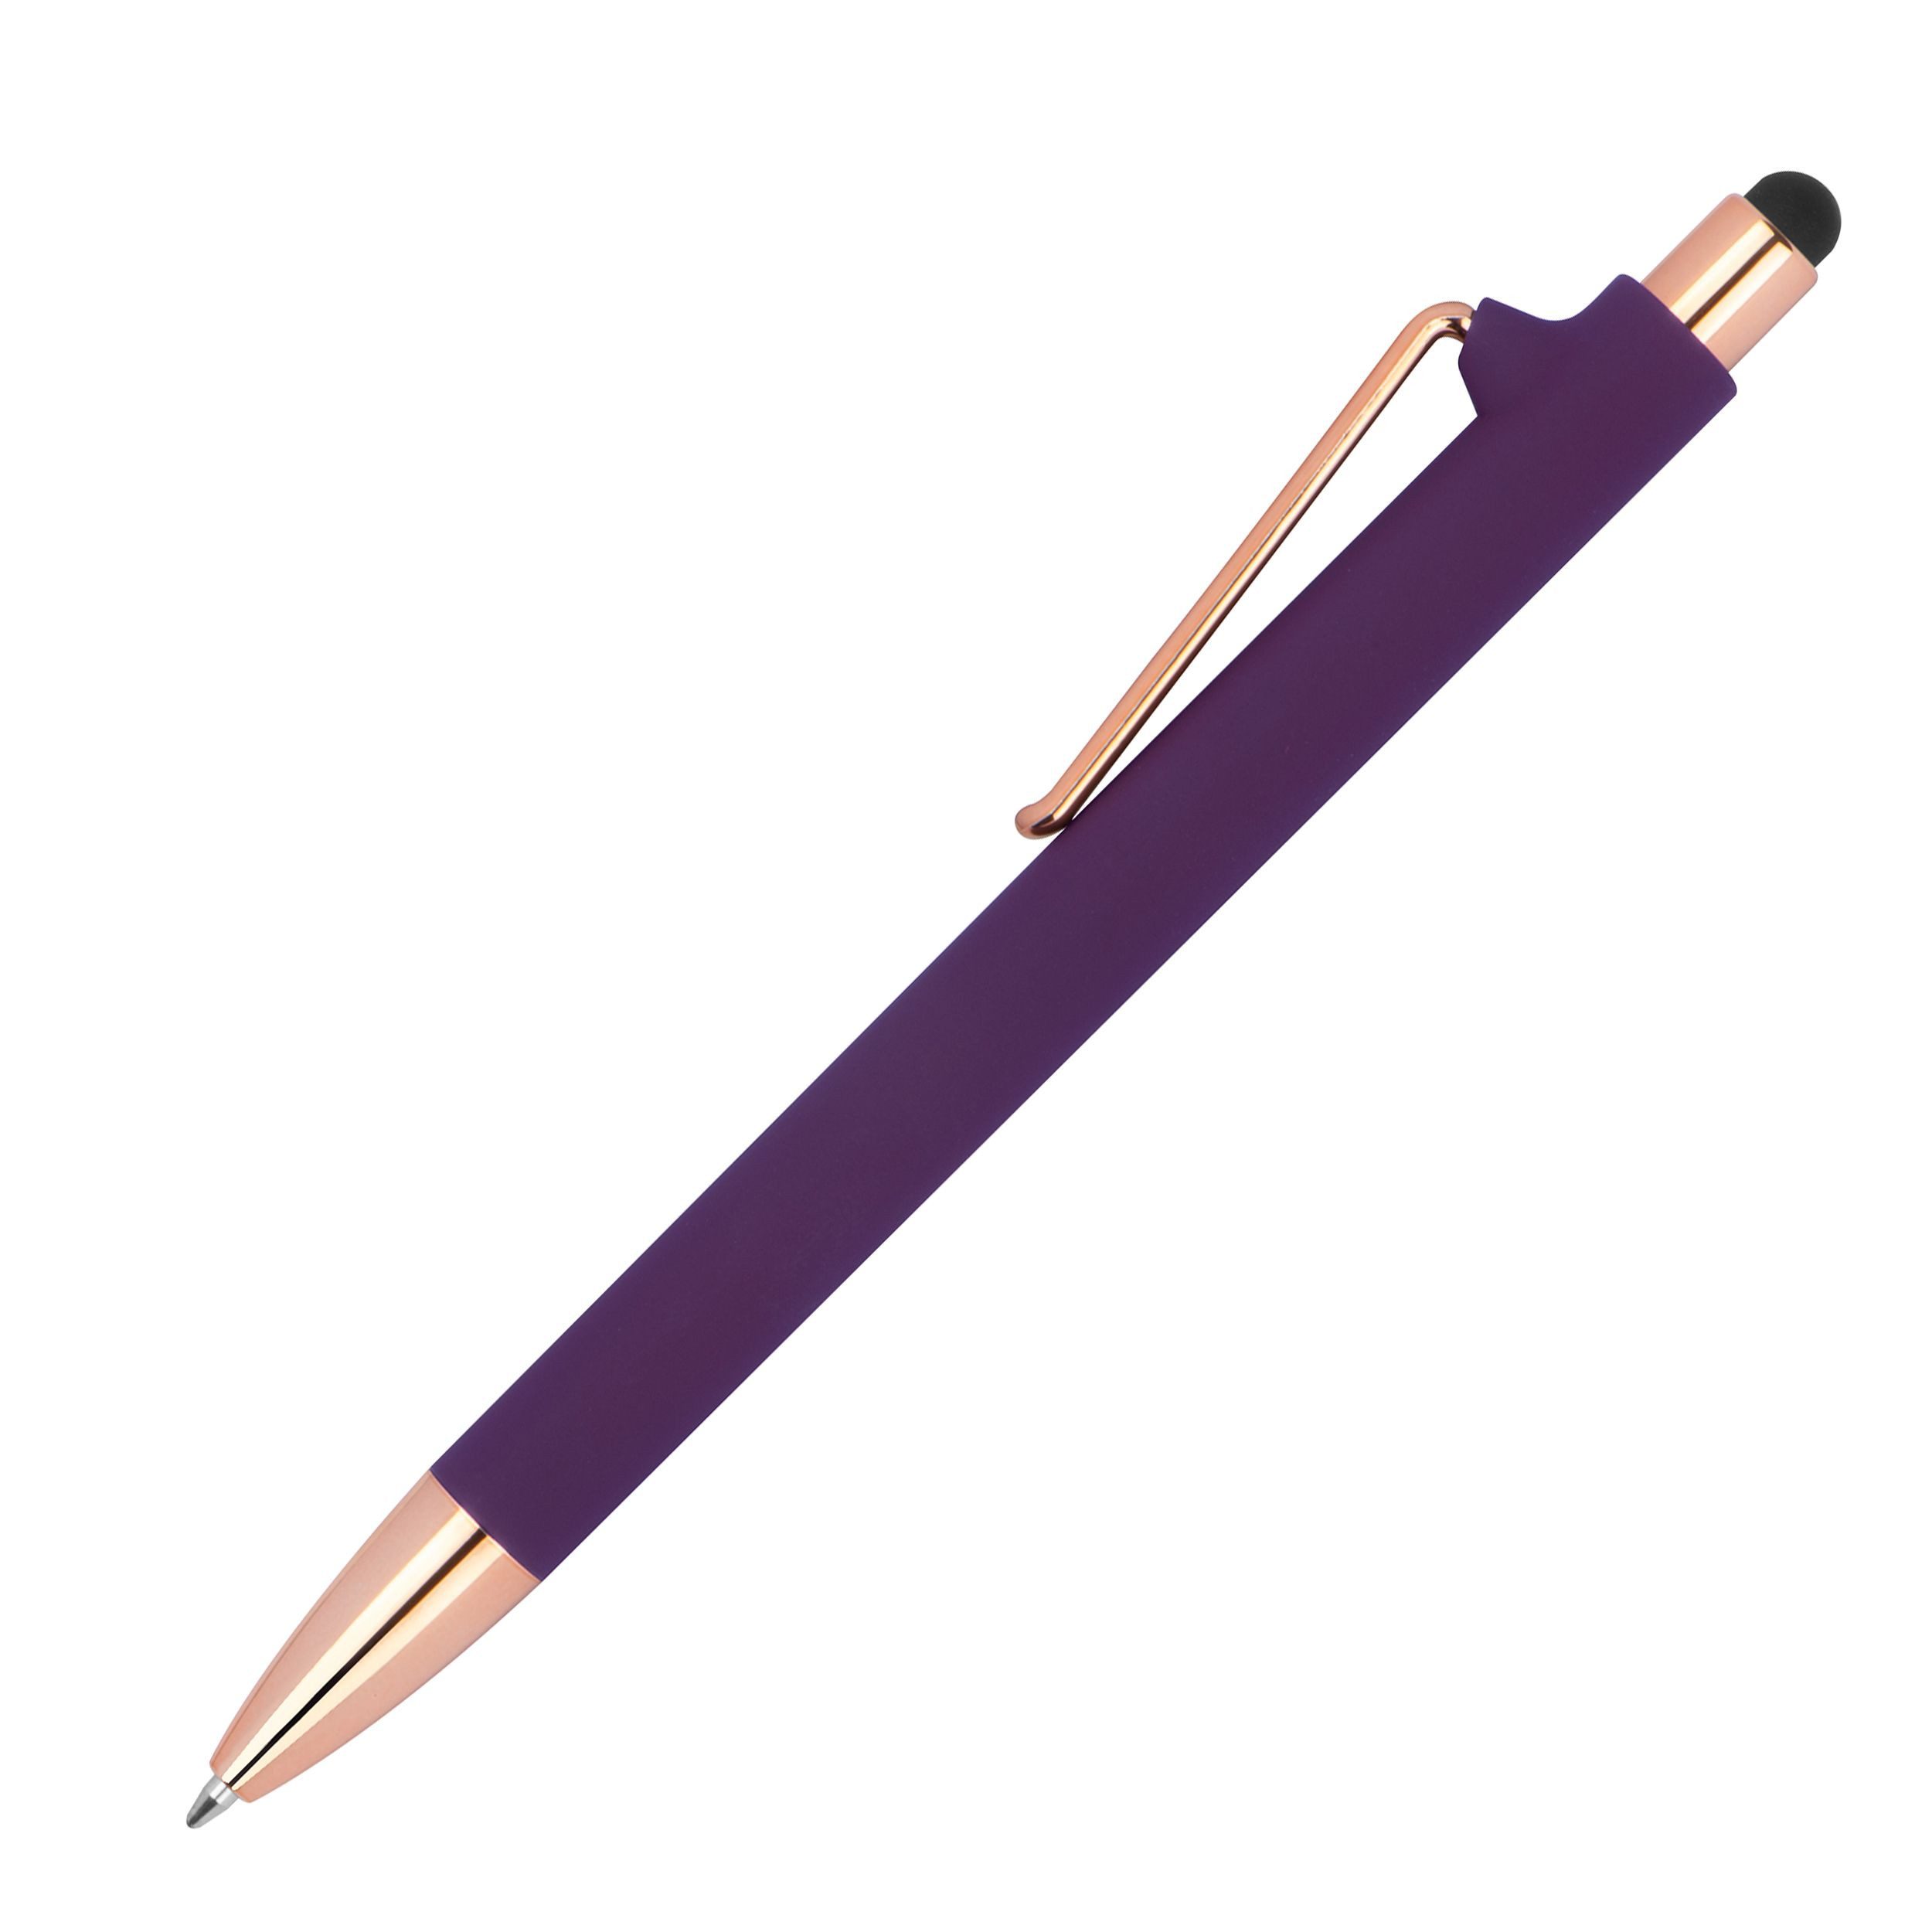 Livepac Office Kugelschreiber 10 Touchpen-Kugelschreiber aus Metall / gummiert / Farbe: roségold-lil